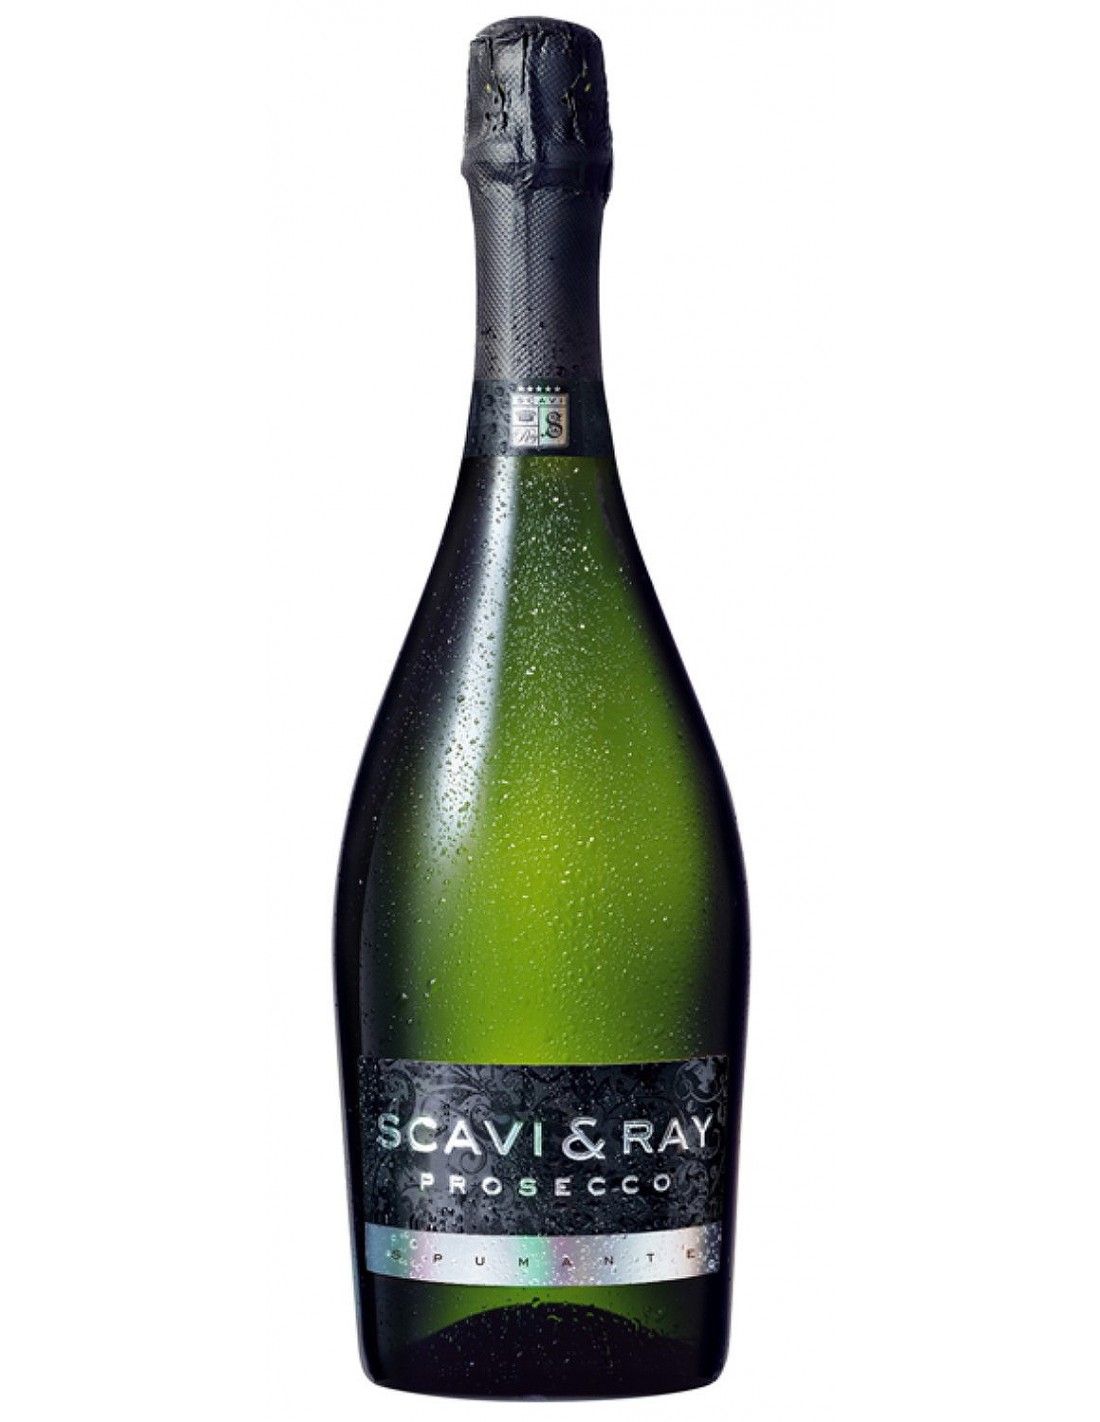 Vin Scavi & Ray Prosecco Extra Dry, 11% alc., 0.75L alcooldiscount.ro